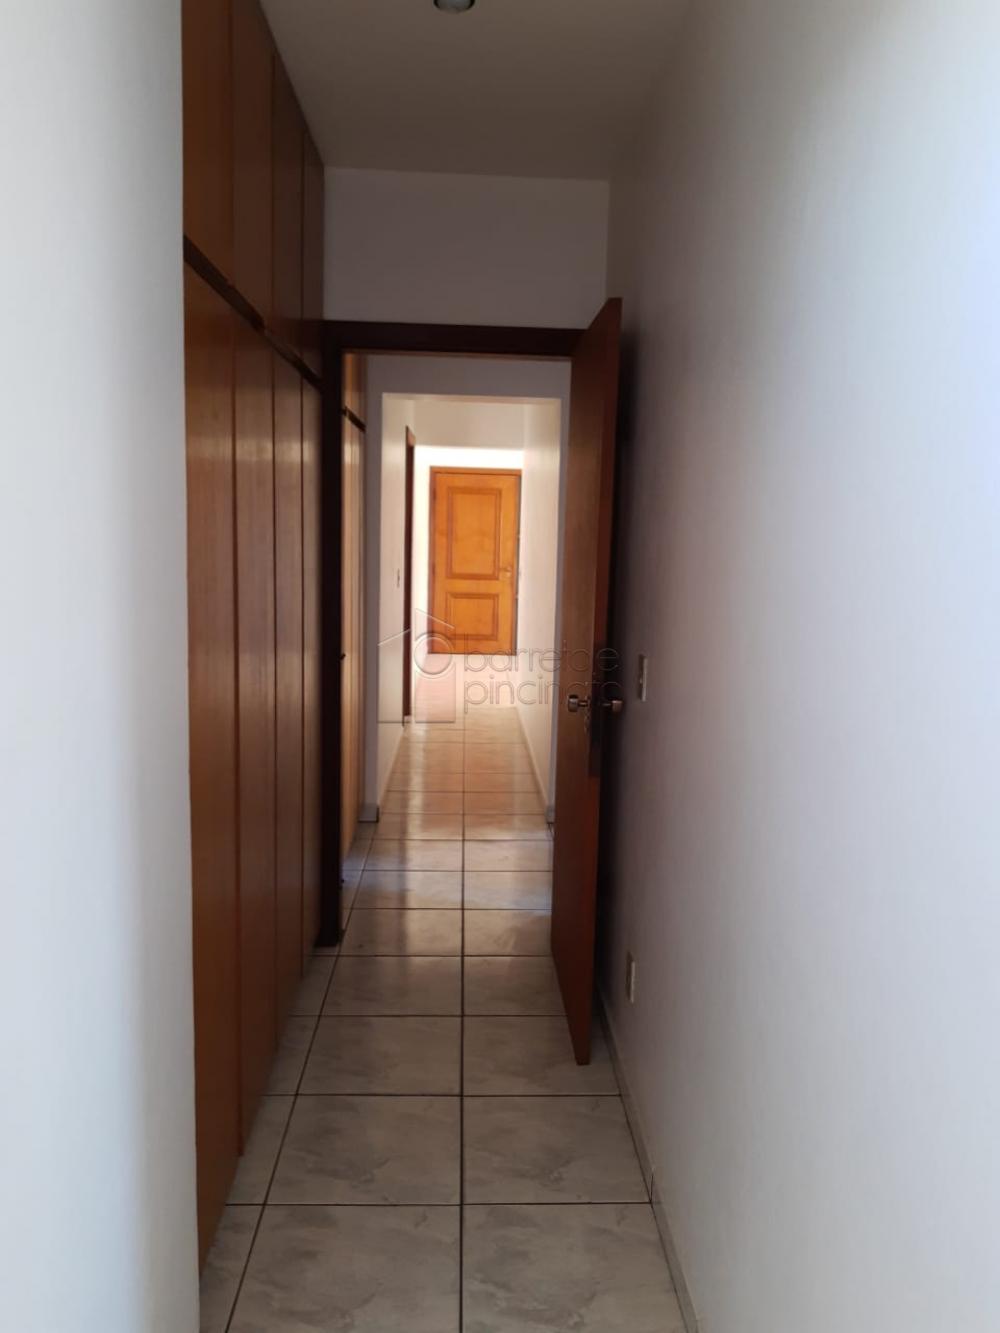 Alugar Apartamento / Padrão em Jundiaí R$ 1.700,00 - Foto 9